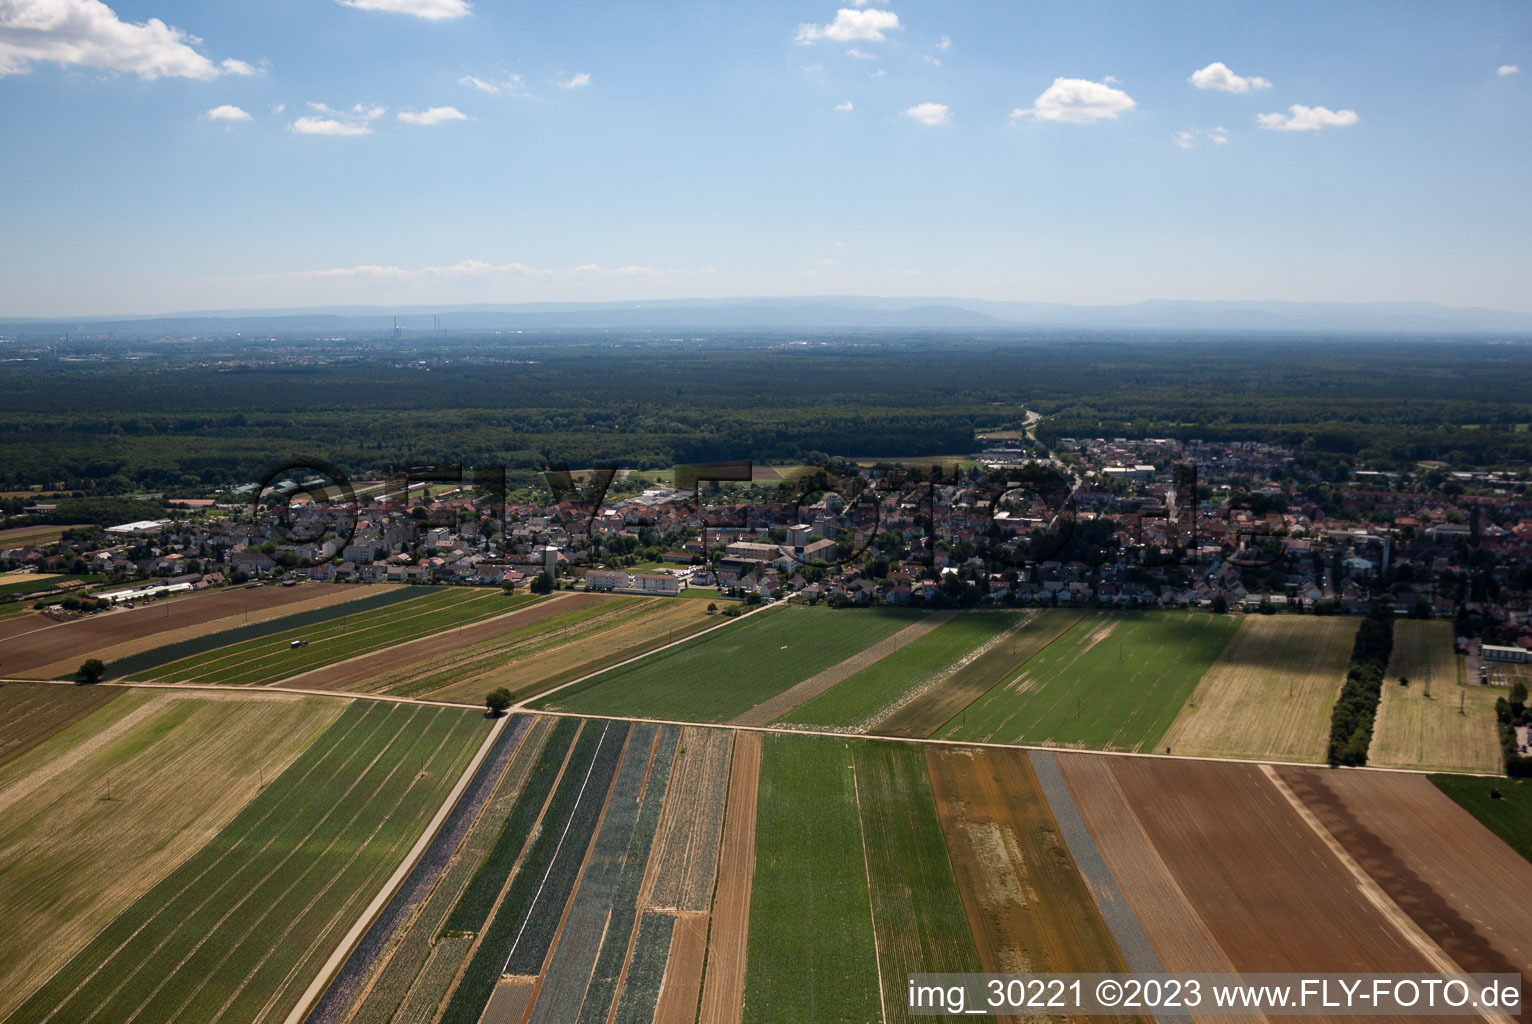 Kandel im Bundesland Rheinland-Pfalz, Deutschland aus der Luft betrachtet